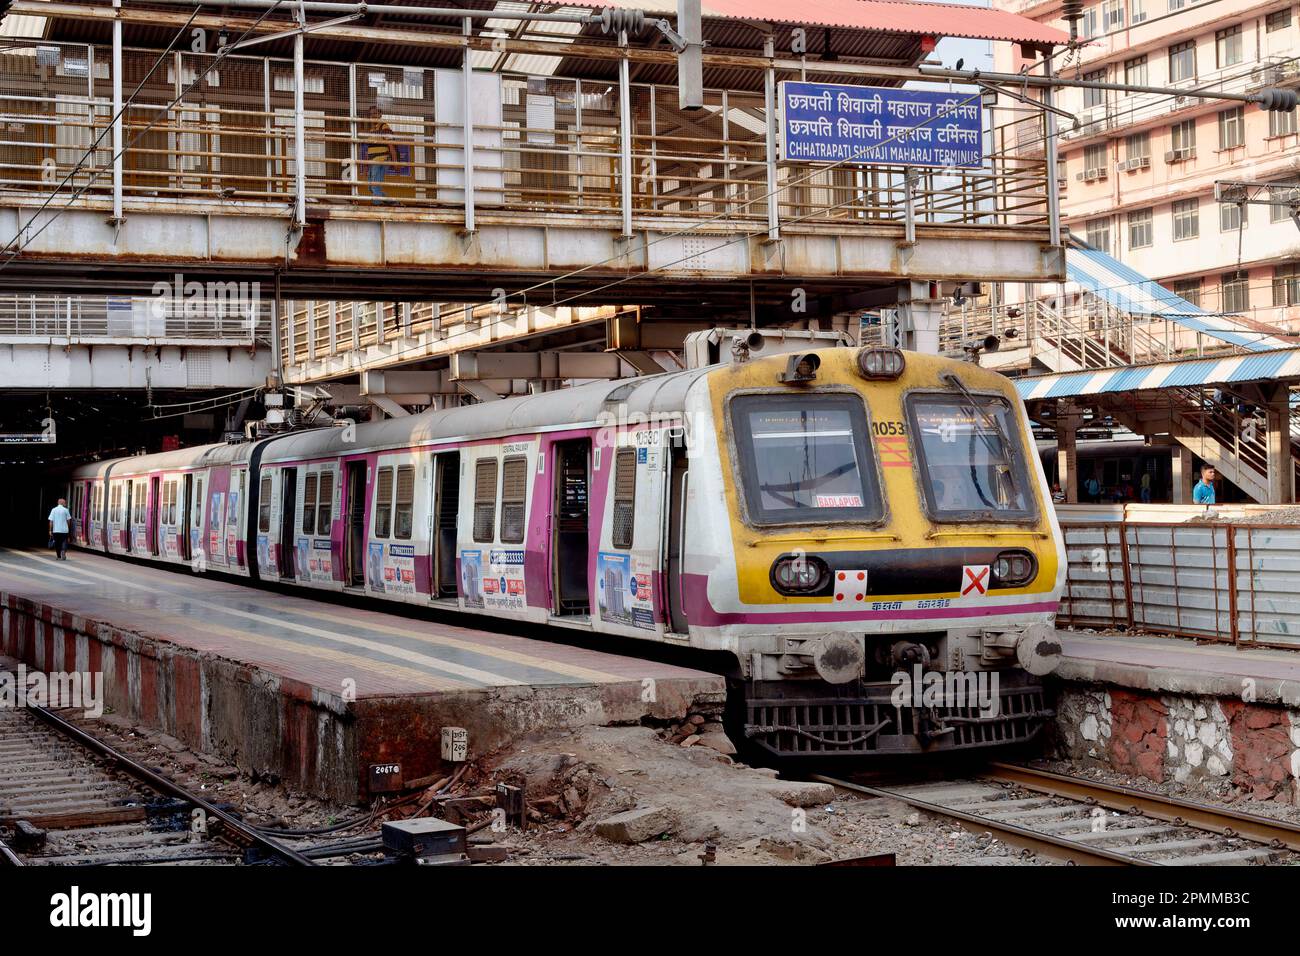 Un train local (de banlieue) de la ligne Central Railways s'est arrêté à Chhatrapati Shivaji Maharaj Terminus (CSMT) à Mumbai, en Inde Banque D'Images